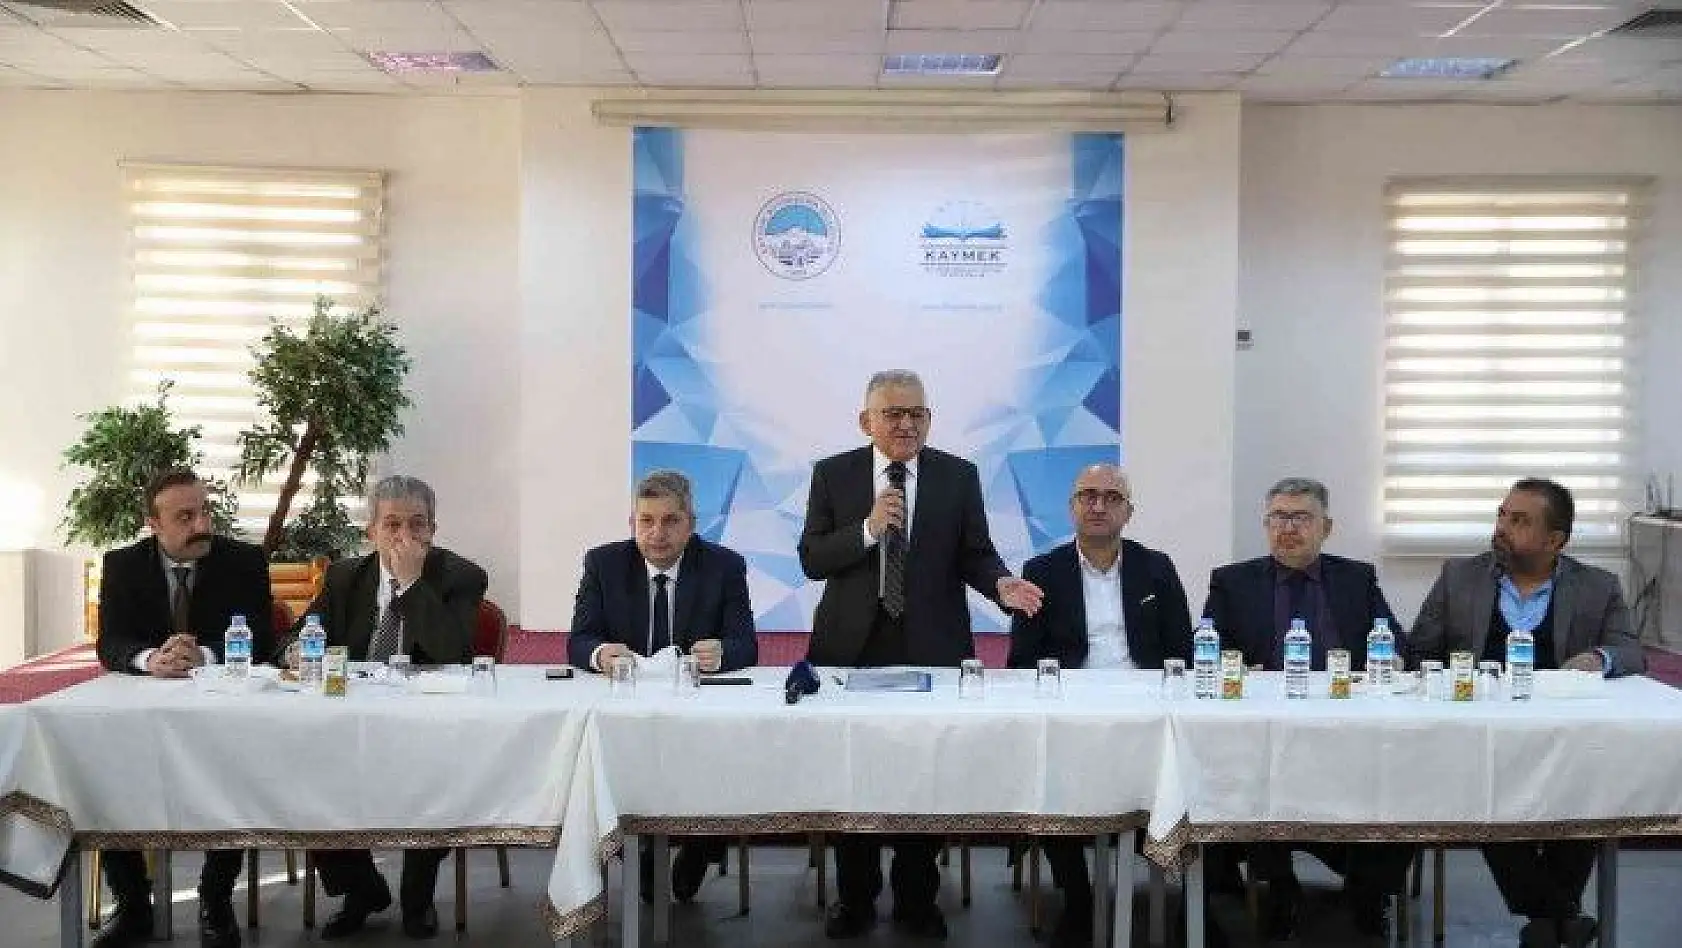 Büyükkılıç'a Bünyan Belediye Başkanı Altun'dan 'hizmet' teşekkürü